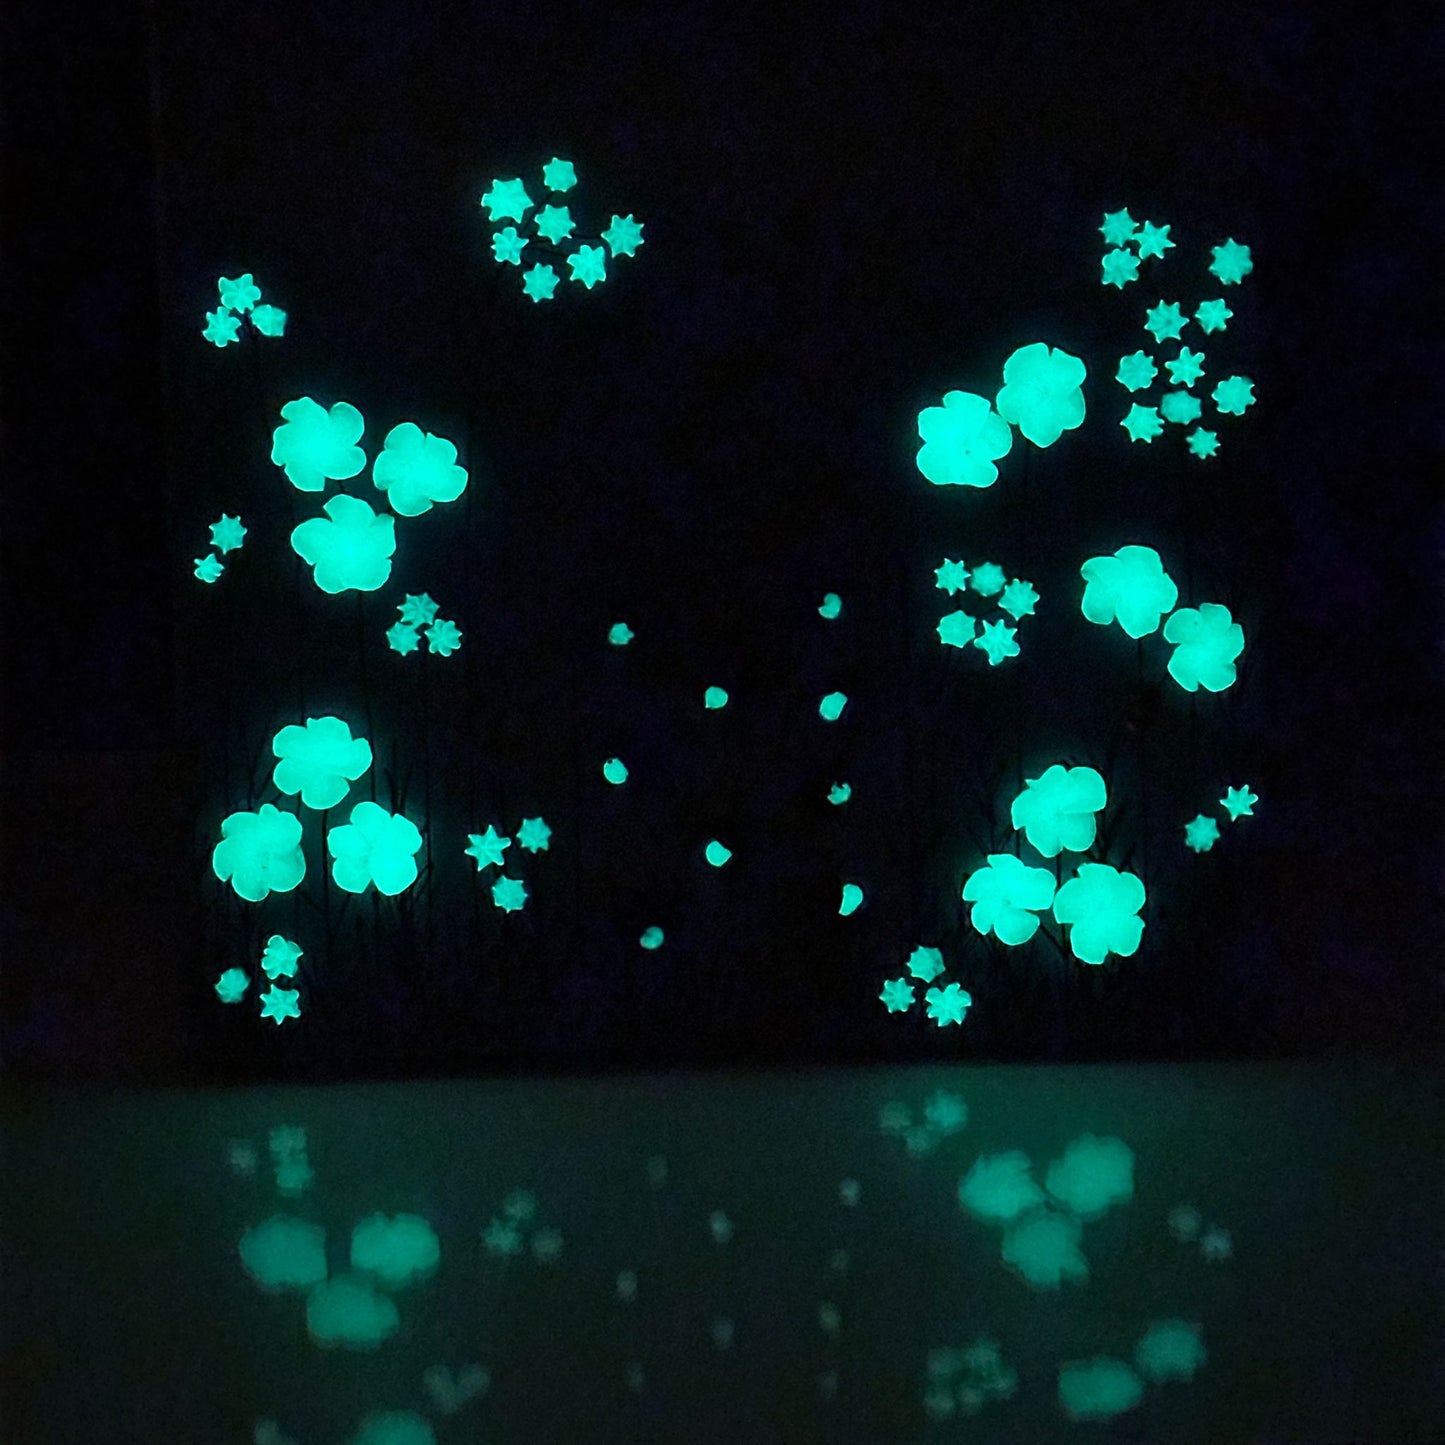 3D Glow In The Dark Lightning Bugs In A Jar 8"x8"